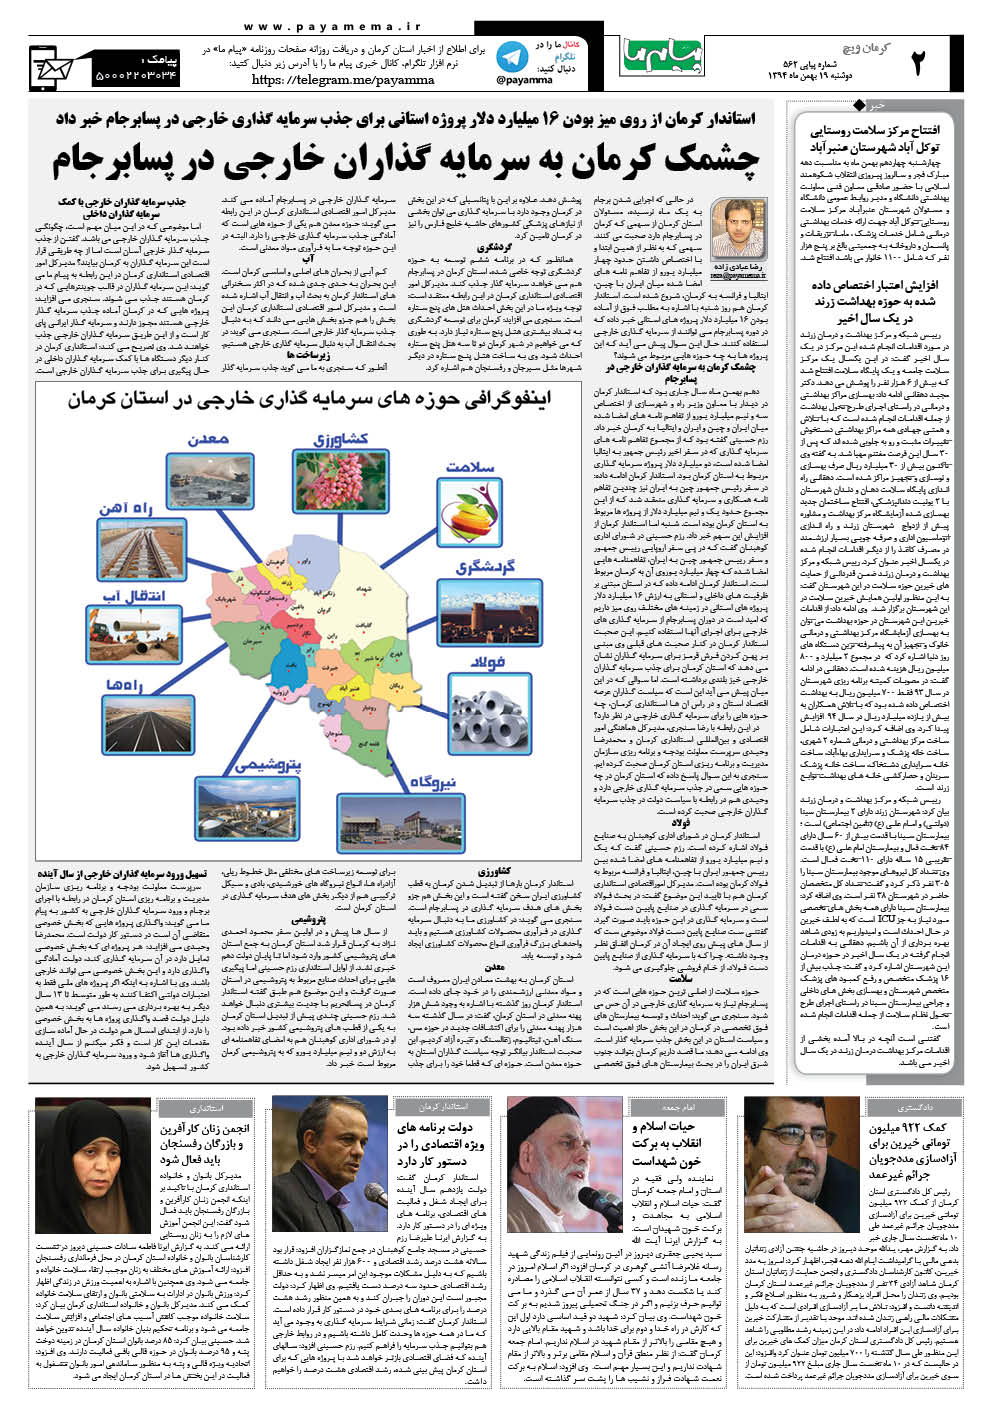 صفحه کرمان ویج شماره 562 روزنامه پیام ما